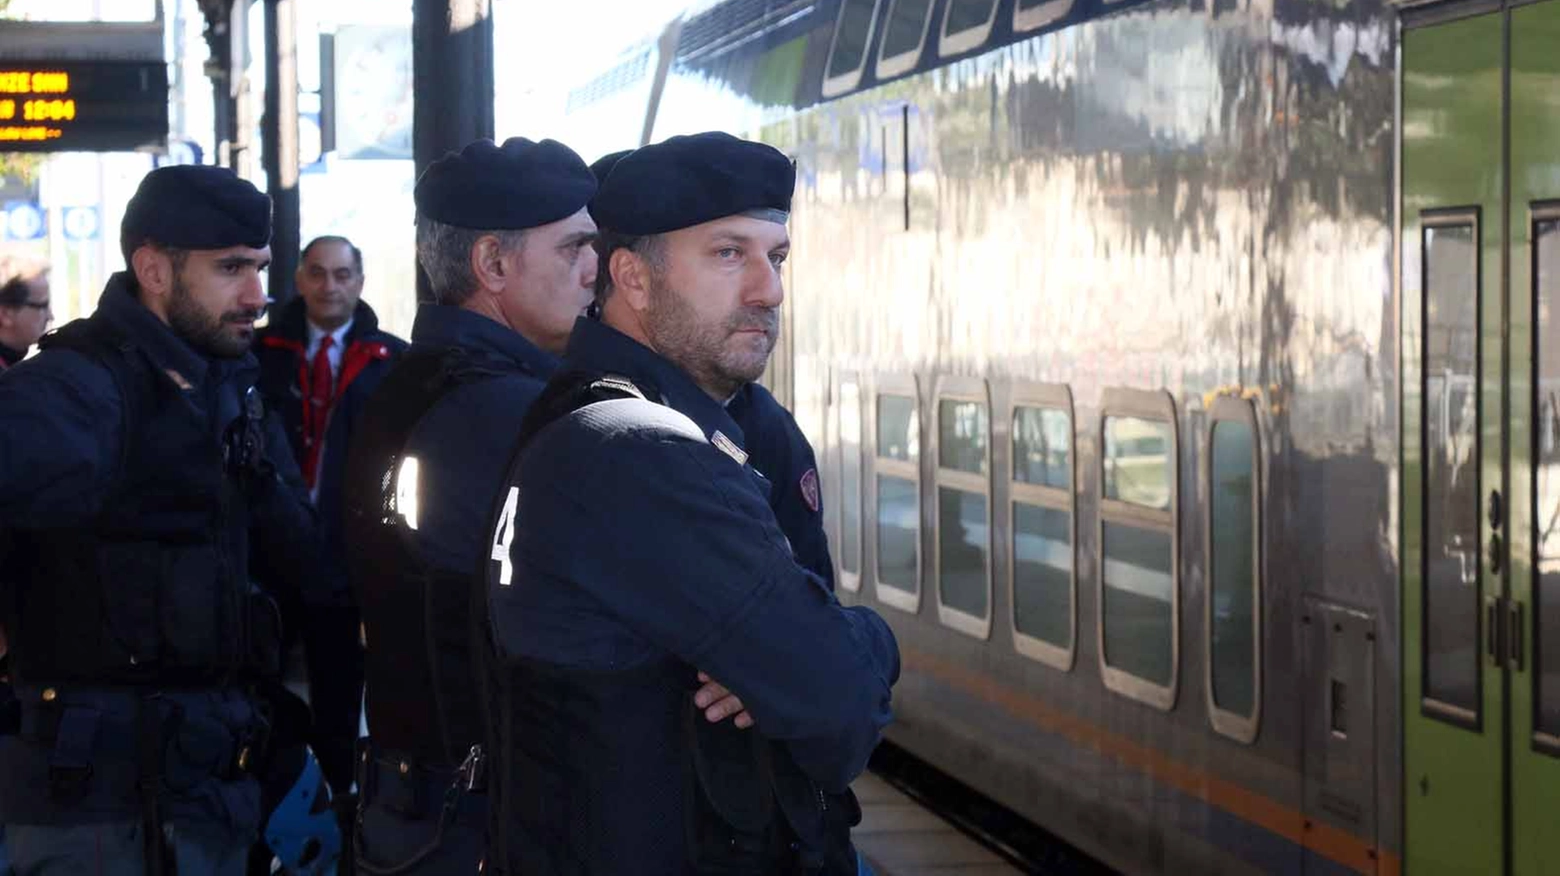 Controlli della polizia alla stazione. Foto Gianni Nucci/Fotocronache Germogli